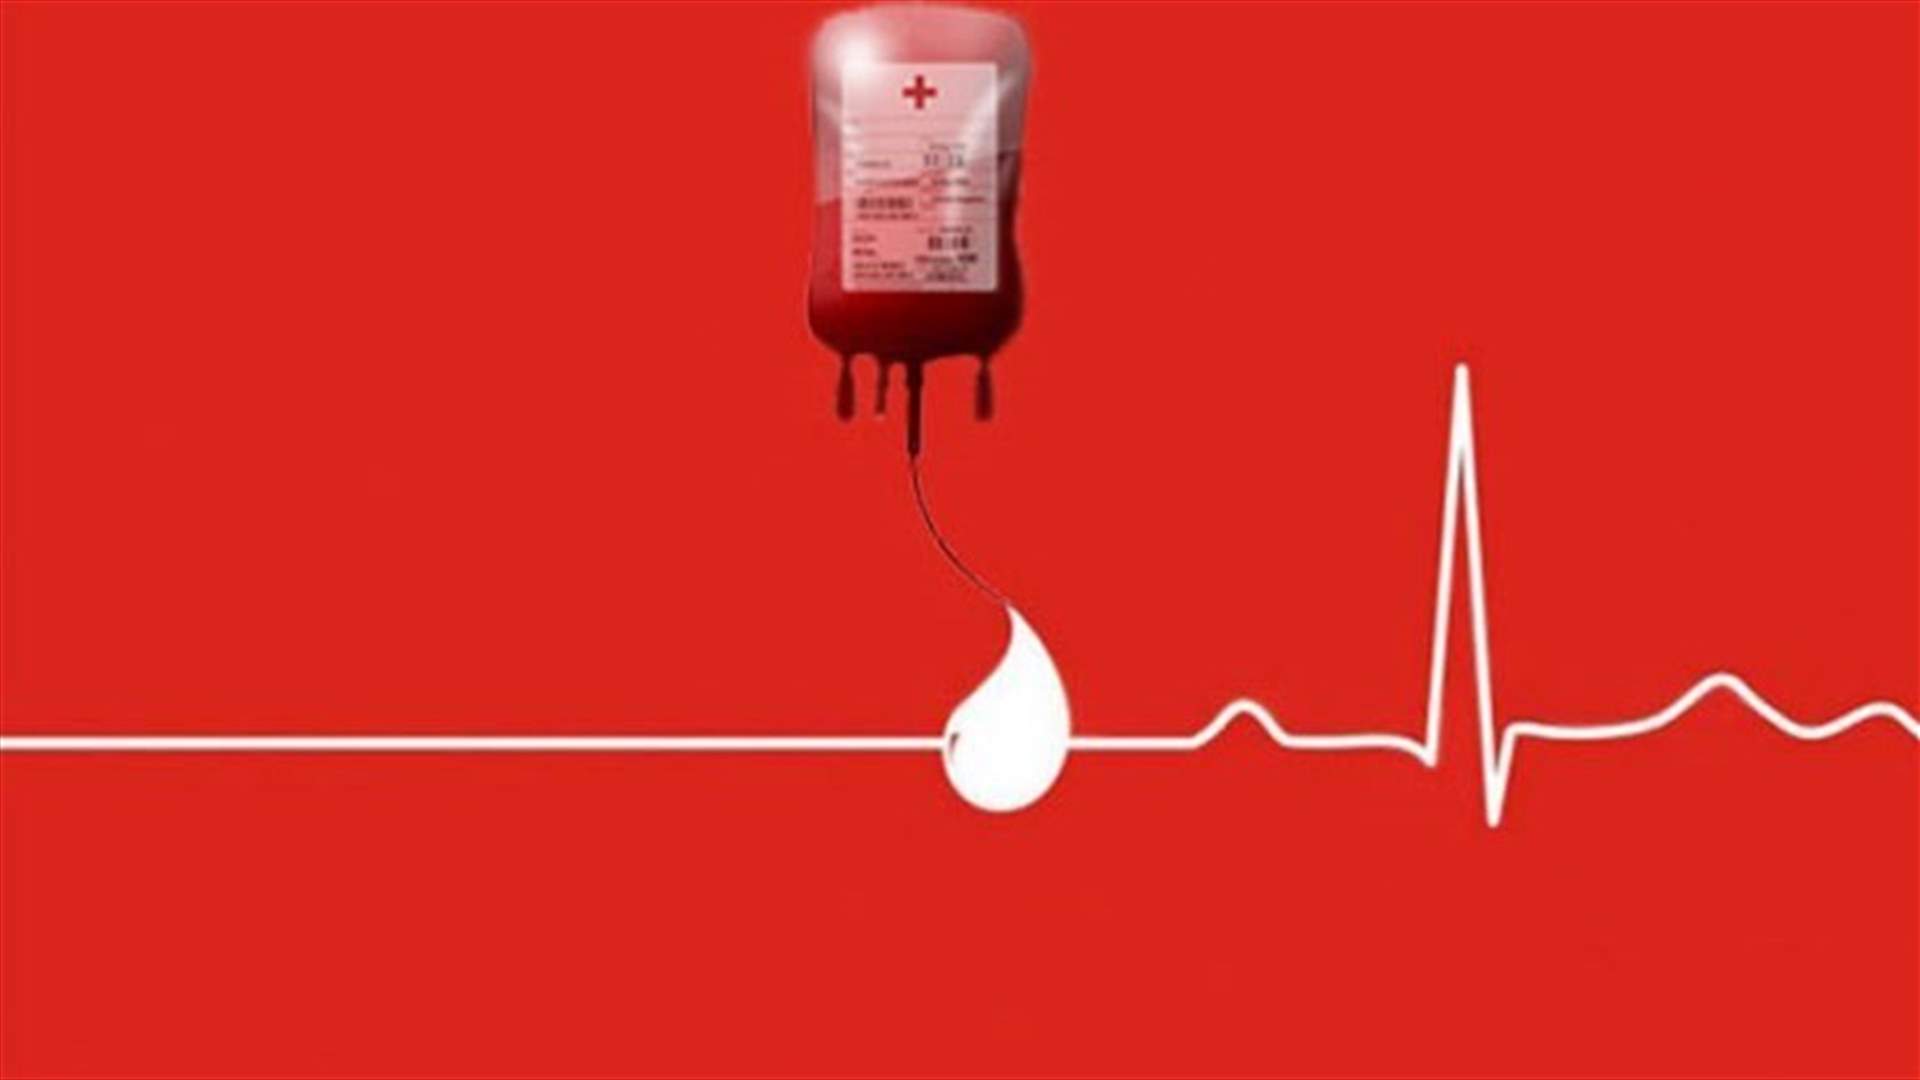 مريض في مستشفى المشرق بحاجة ماسة الى دم من فئة +A ... للتبرع الاتصال على 71278884